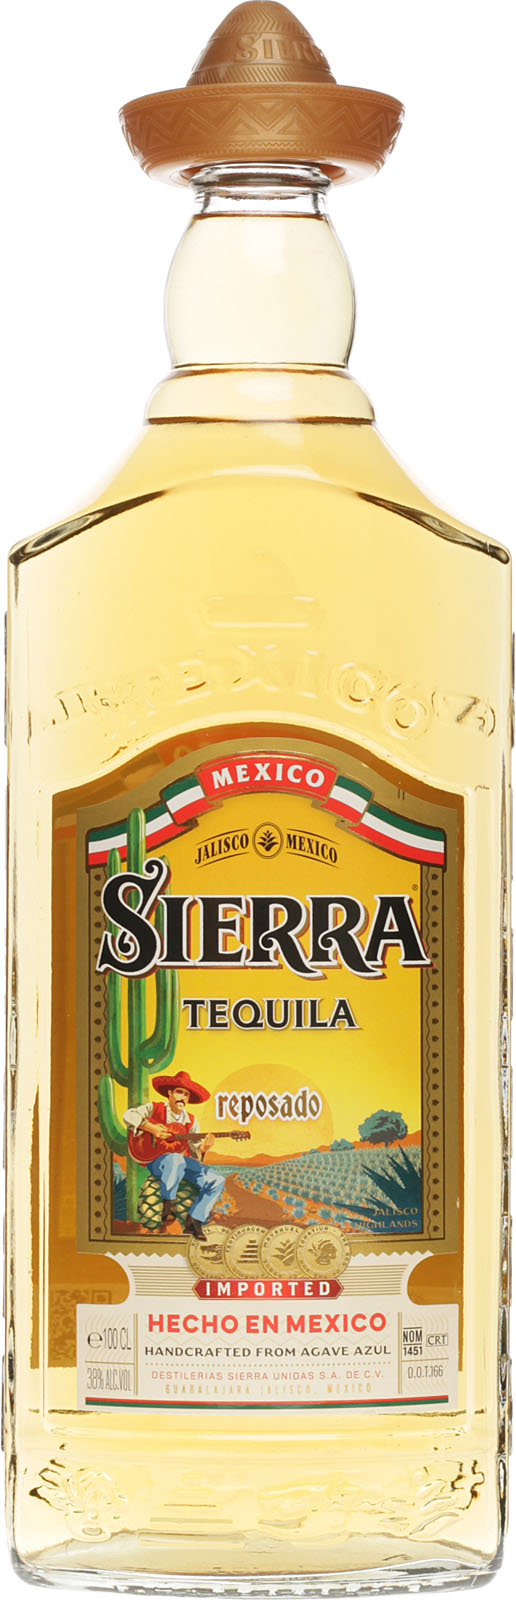 Sierra Reposado Tequila 1 Liter 38% Vol., Tequila aus M